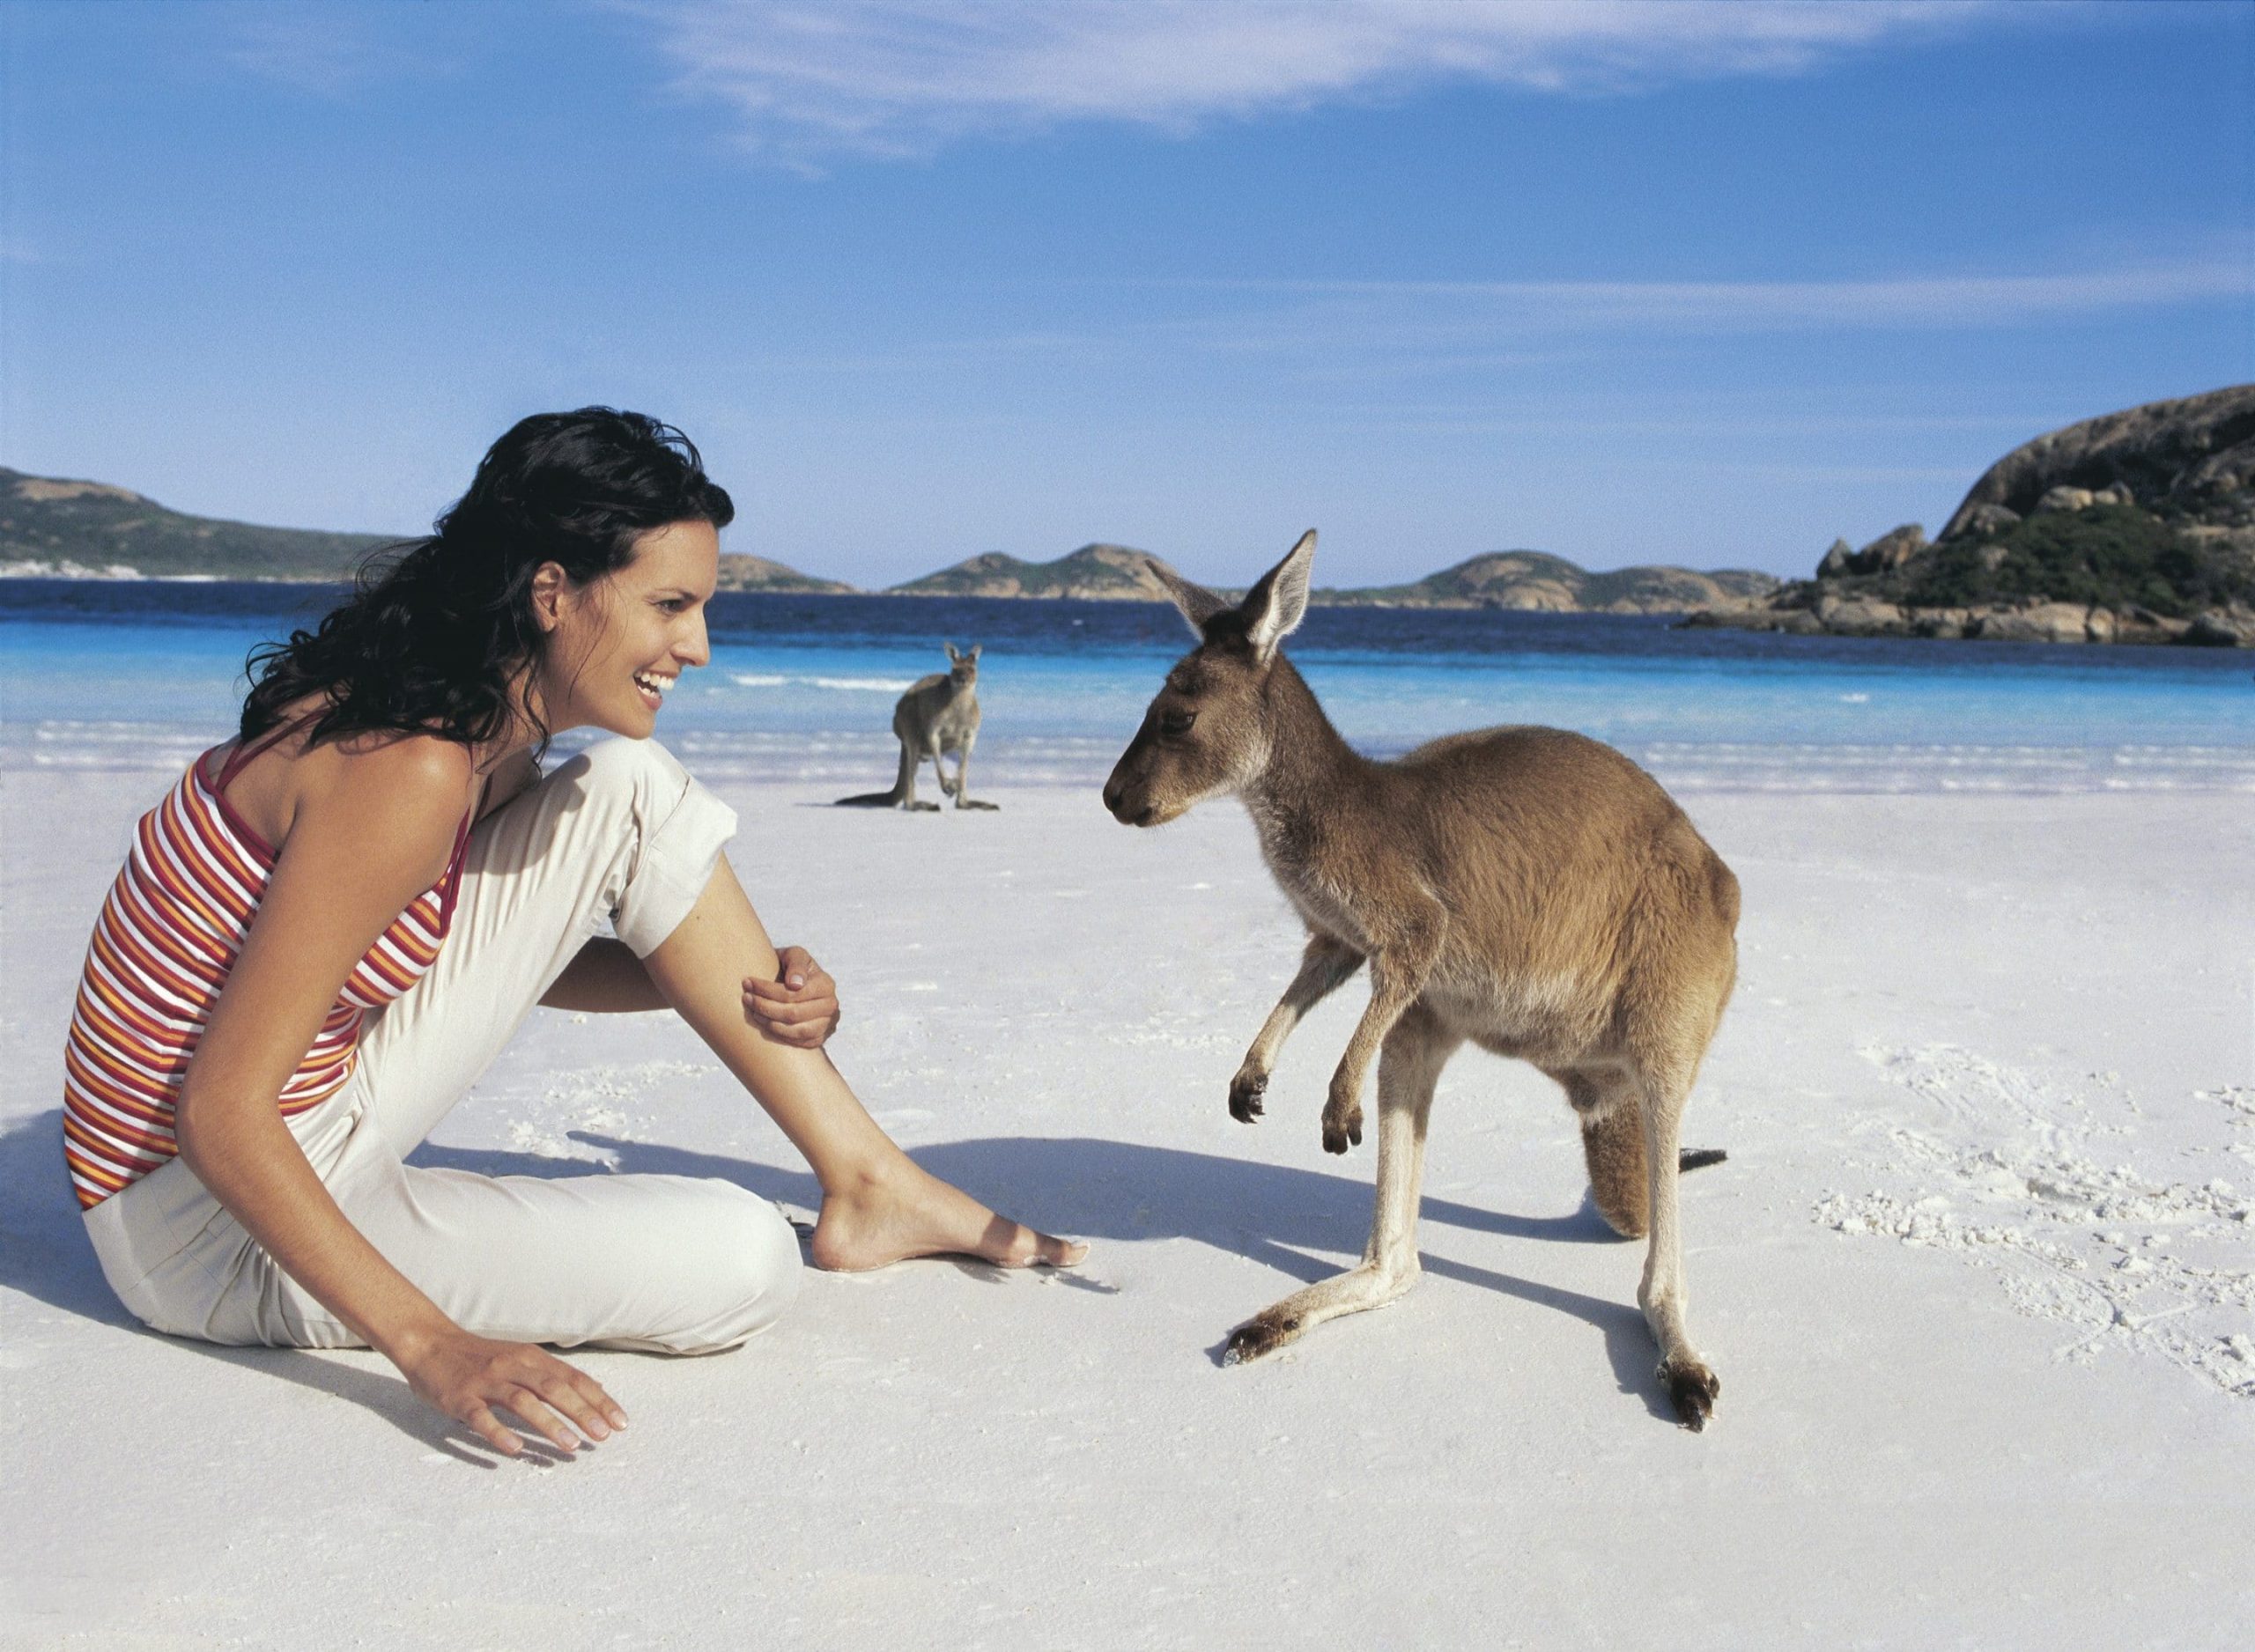 1 группа туристов из австралии. Остров кенгуру (залив сент-Винсент). Остров кенгуру в Австралии. Девушка и кенгуру. Австралия туризм.